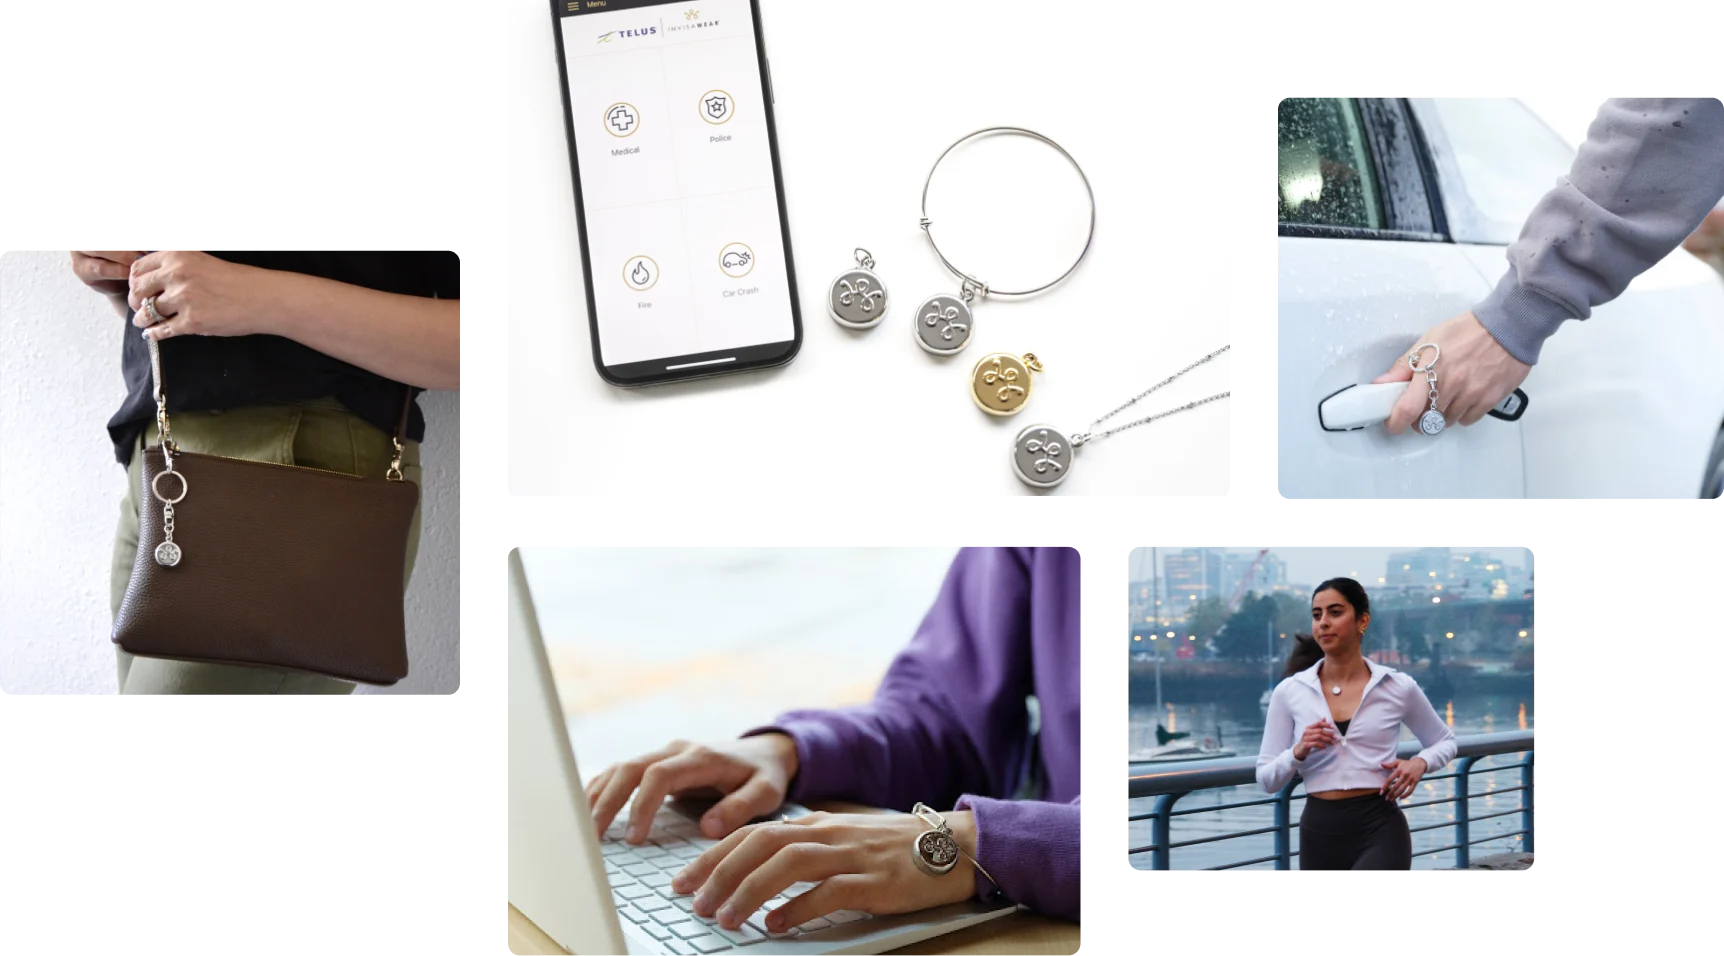 Divers accessoires de sécurité connectés, comme des breloques, des bracelets, des porte-clés ou des colliers, portés par des gens qui étudient ou qui courent.